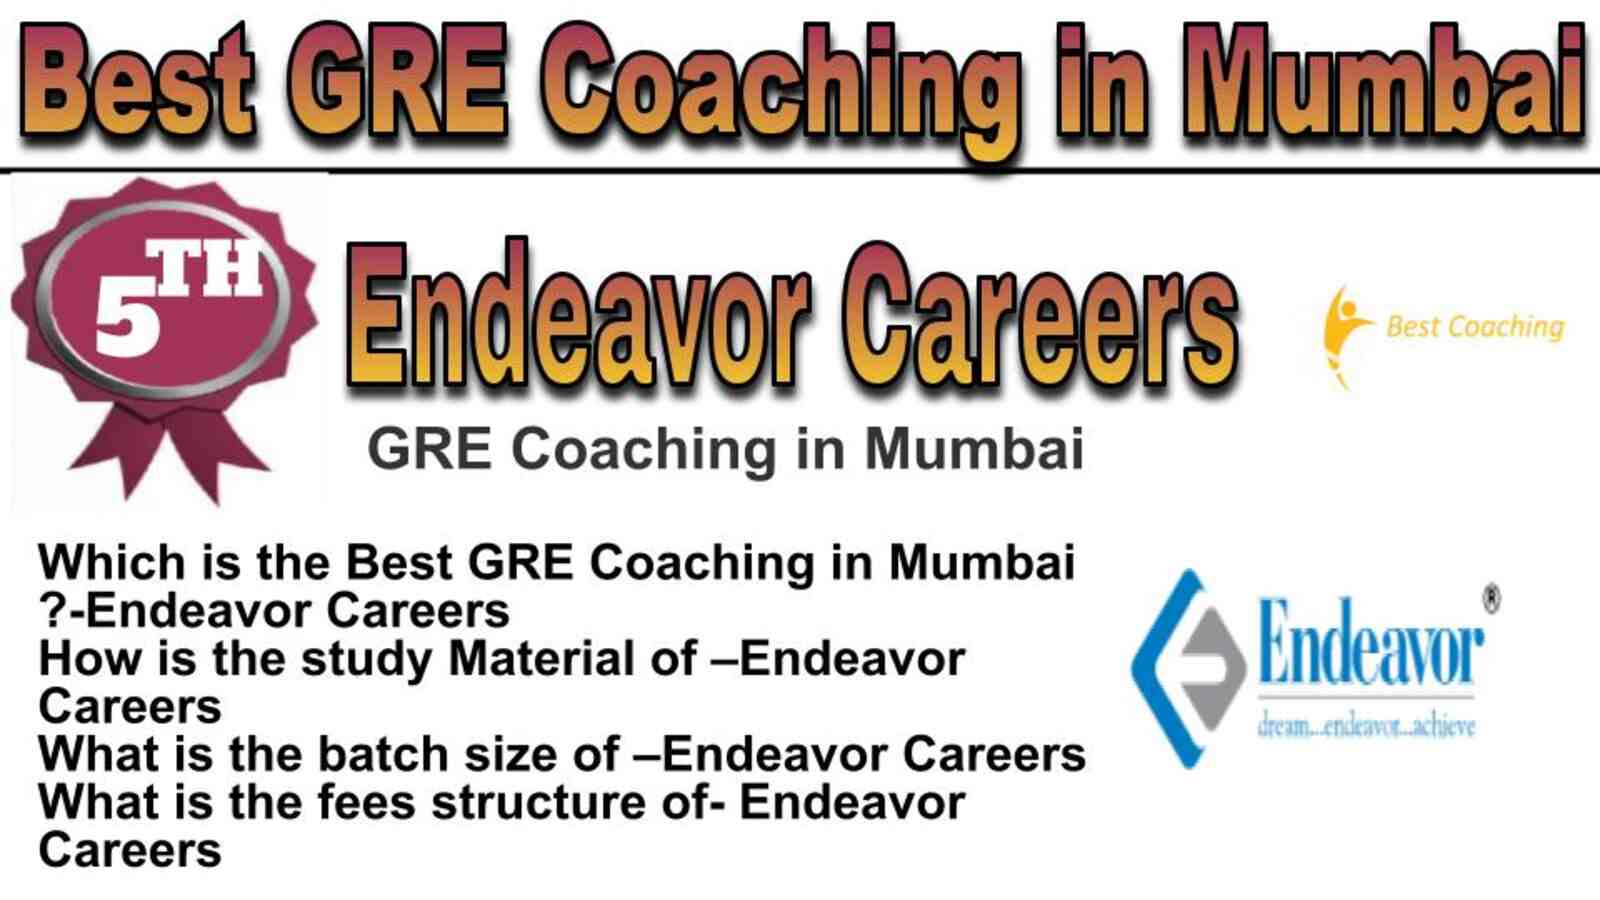 Rank 5 best GRE coaching in Mumbai